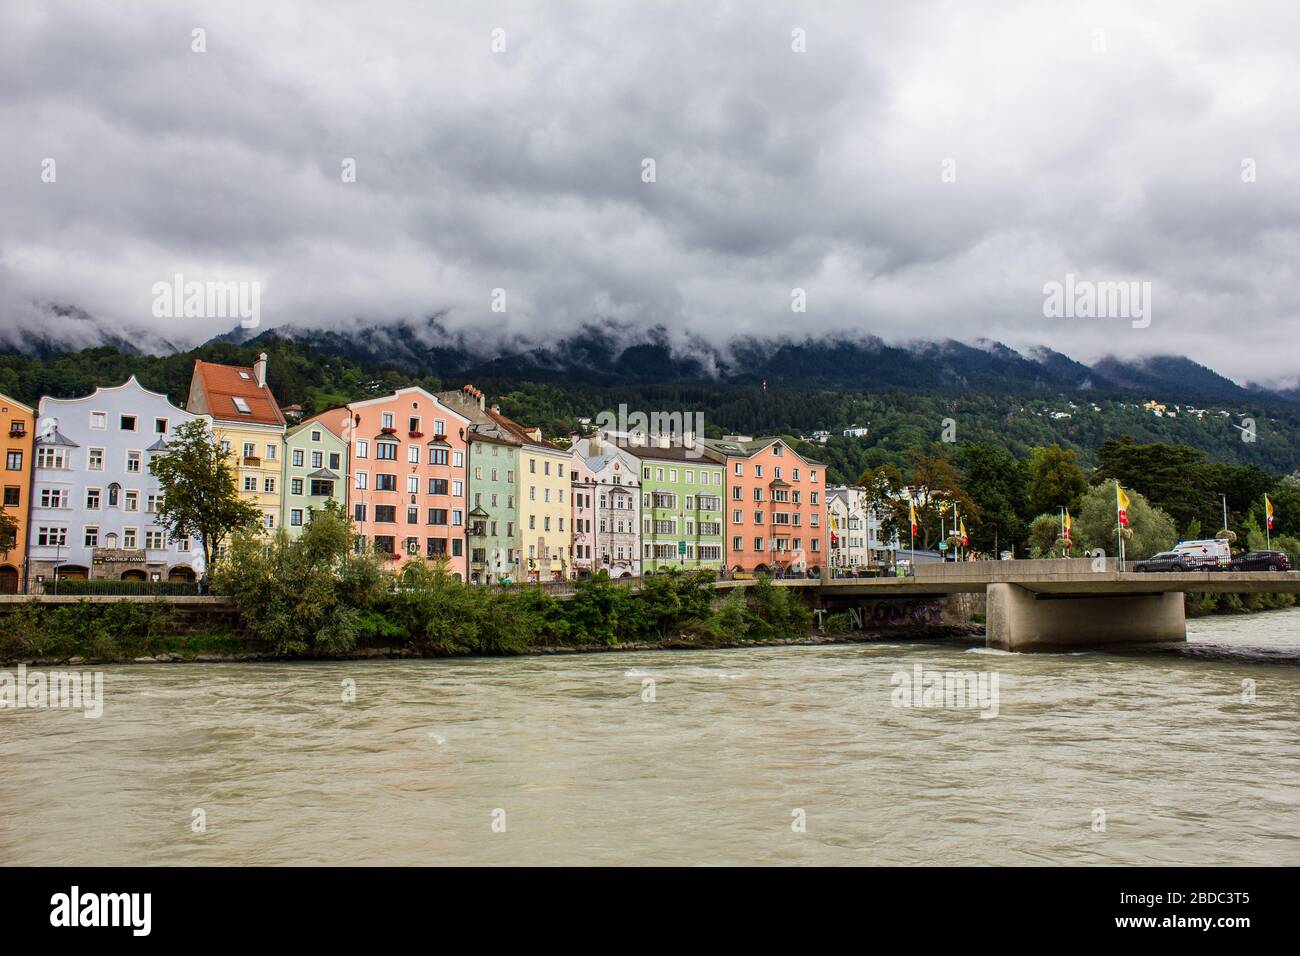 Innsbruck, Austria - 12 agosto 2019: Edifici colorati sulla riva del fiume Inn con le montagne Nordkette sullo sfondo. Foto Stock